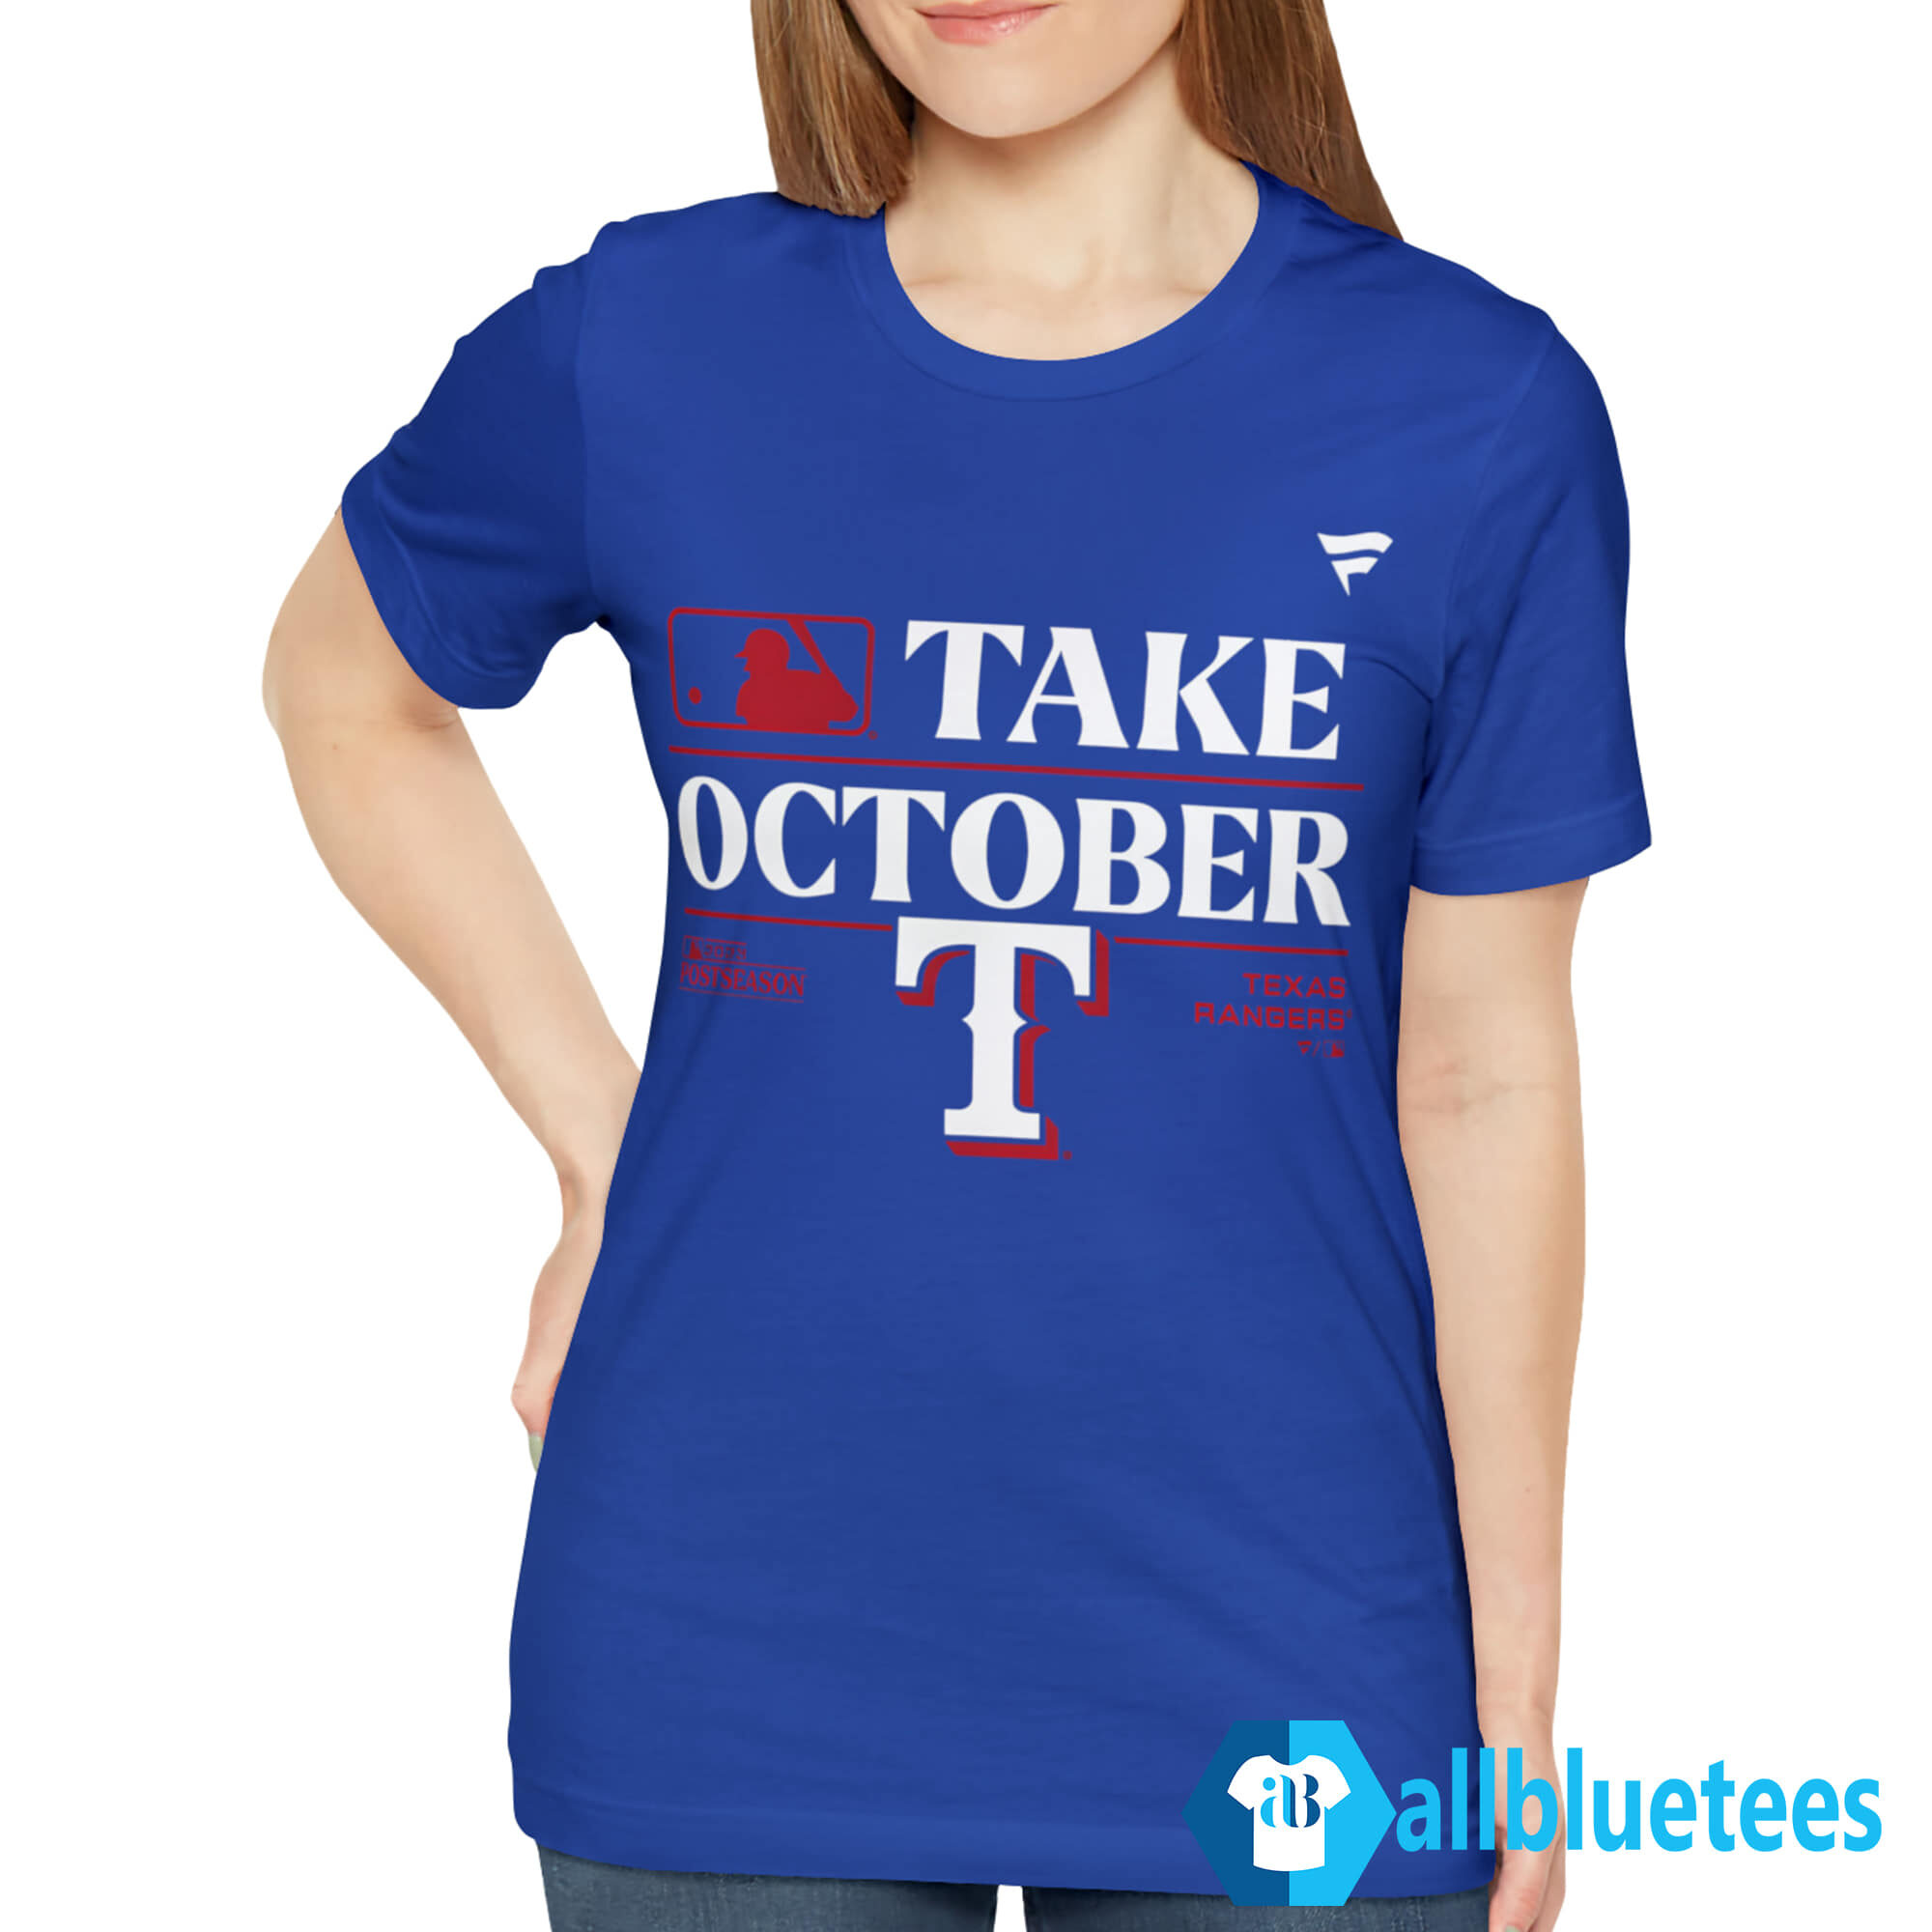 Eletees Texas Rangers Take October Playoffs 2023 Shirt